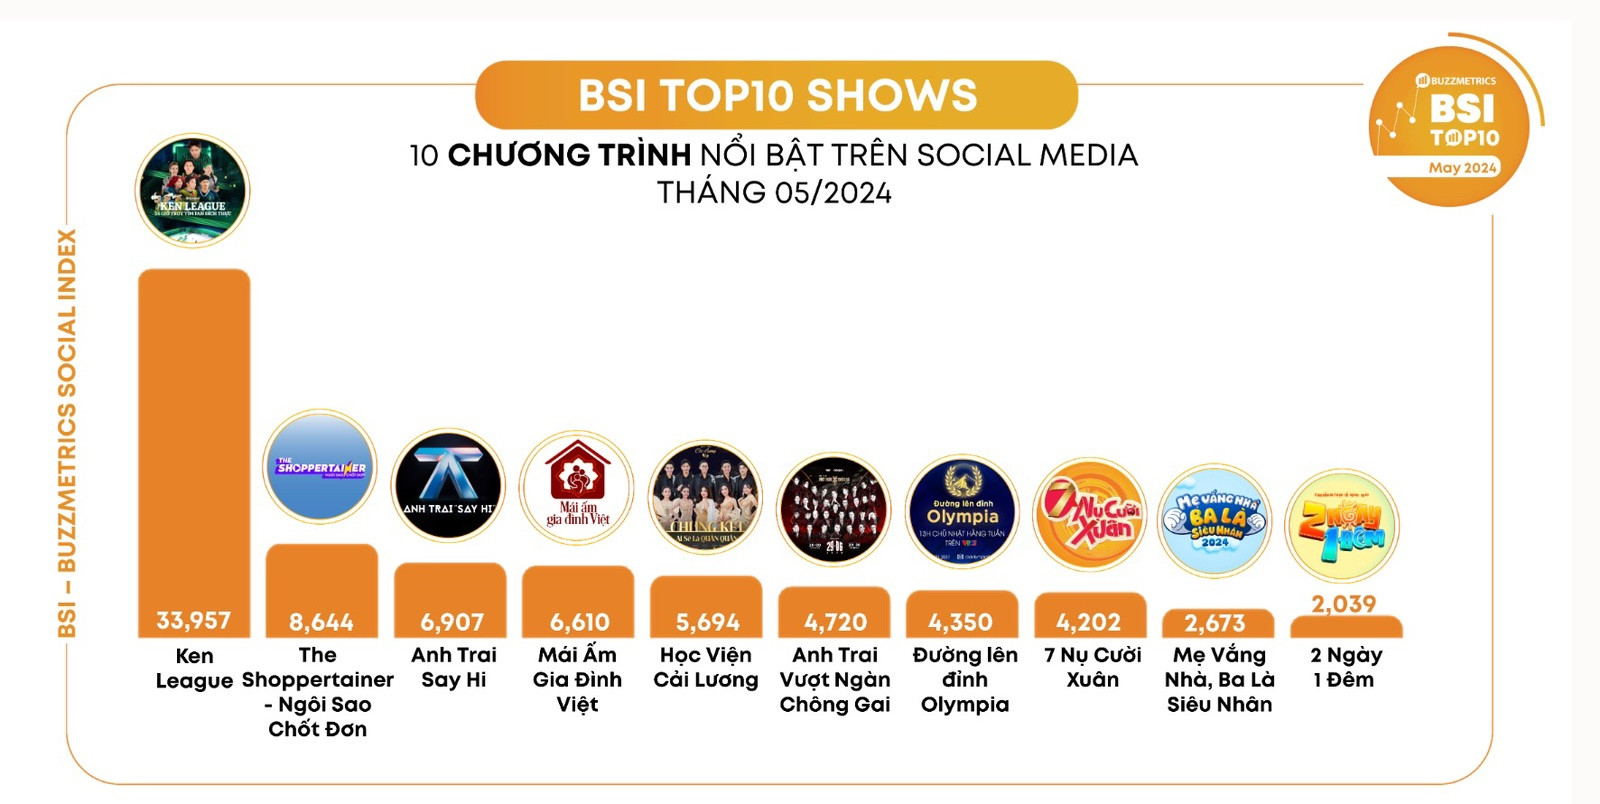 Mái ấm gia đình Việt xếp thứ 4 trong Top 10 chương trình nổi bật trên Social Media của Buzzmetrics - 1